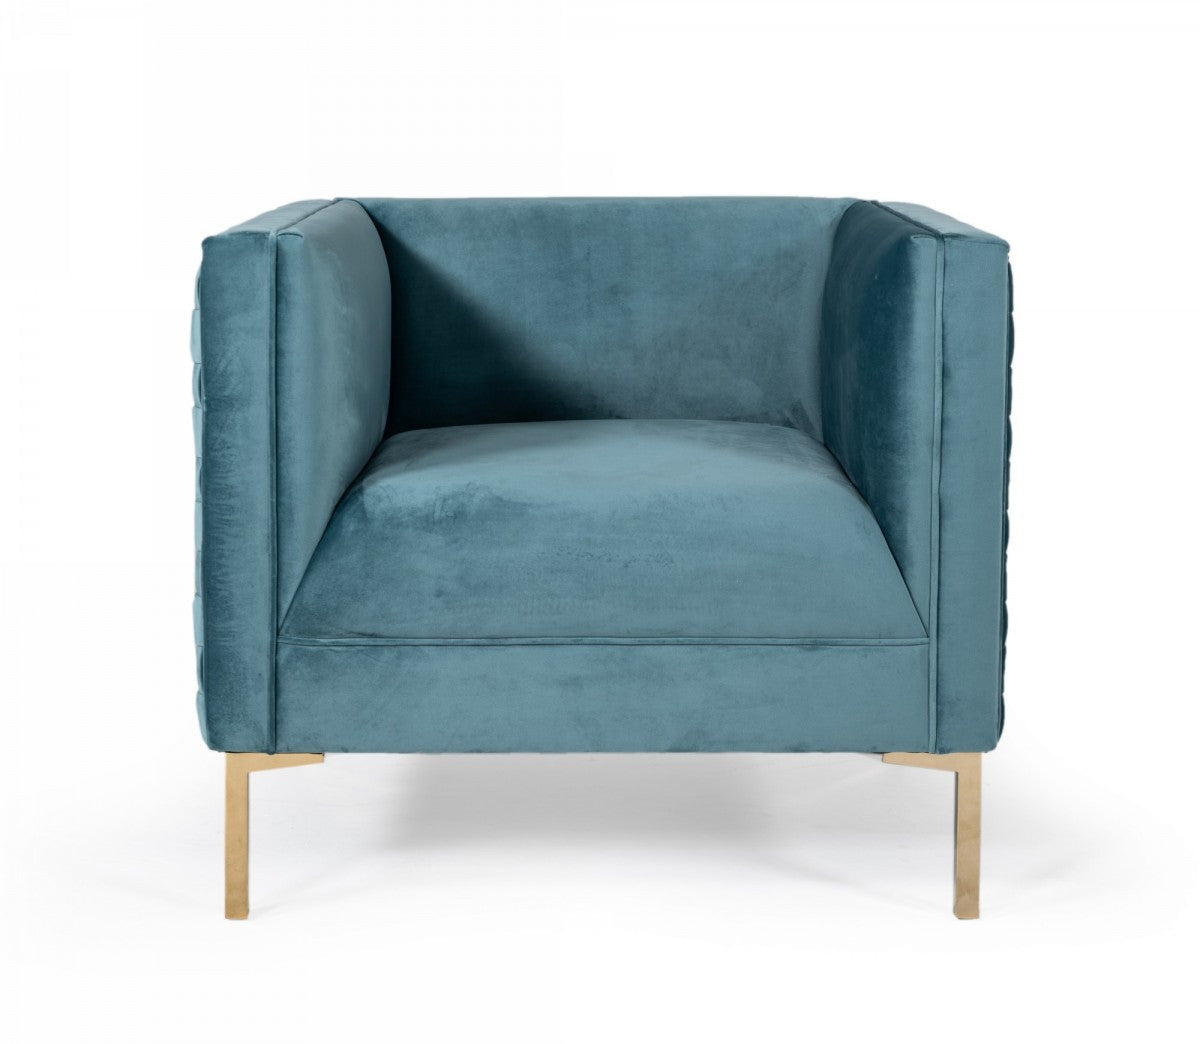 Divani Casa Atwood Modern Teal Arm Chair